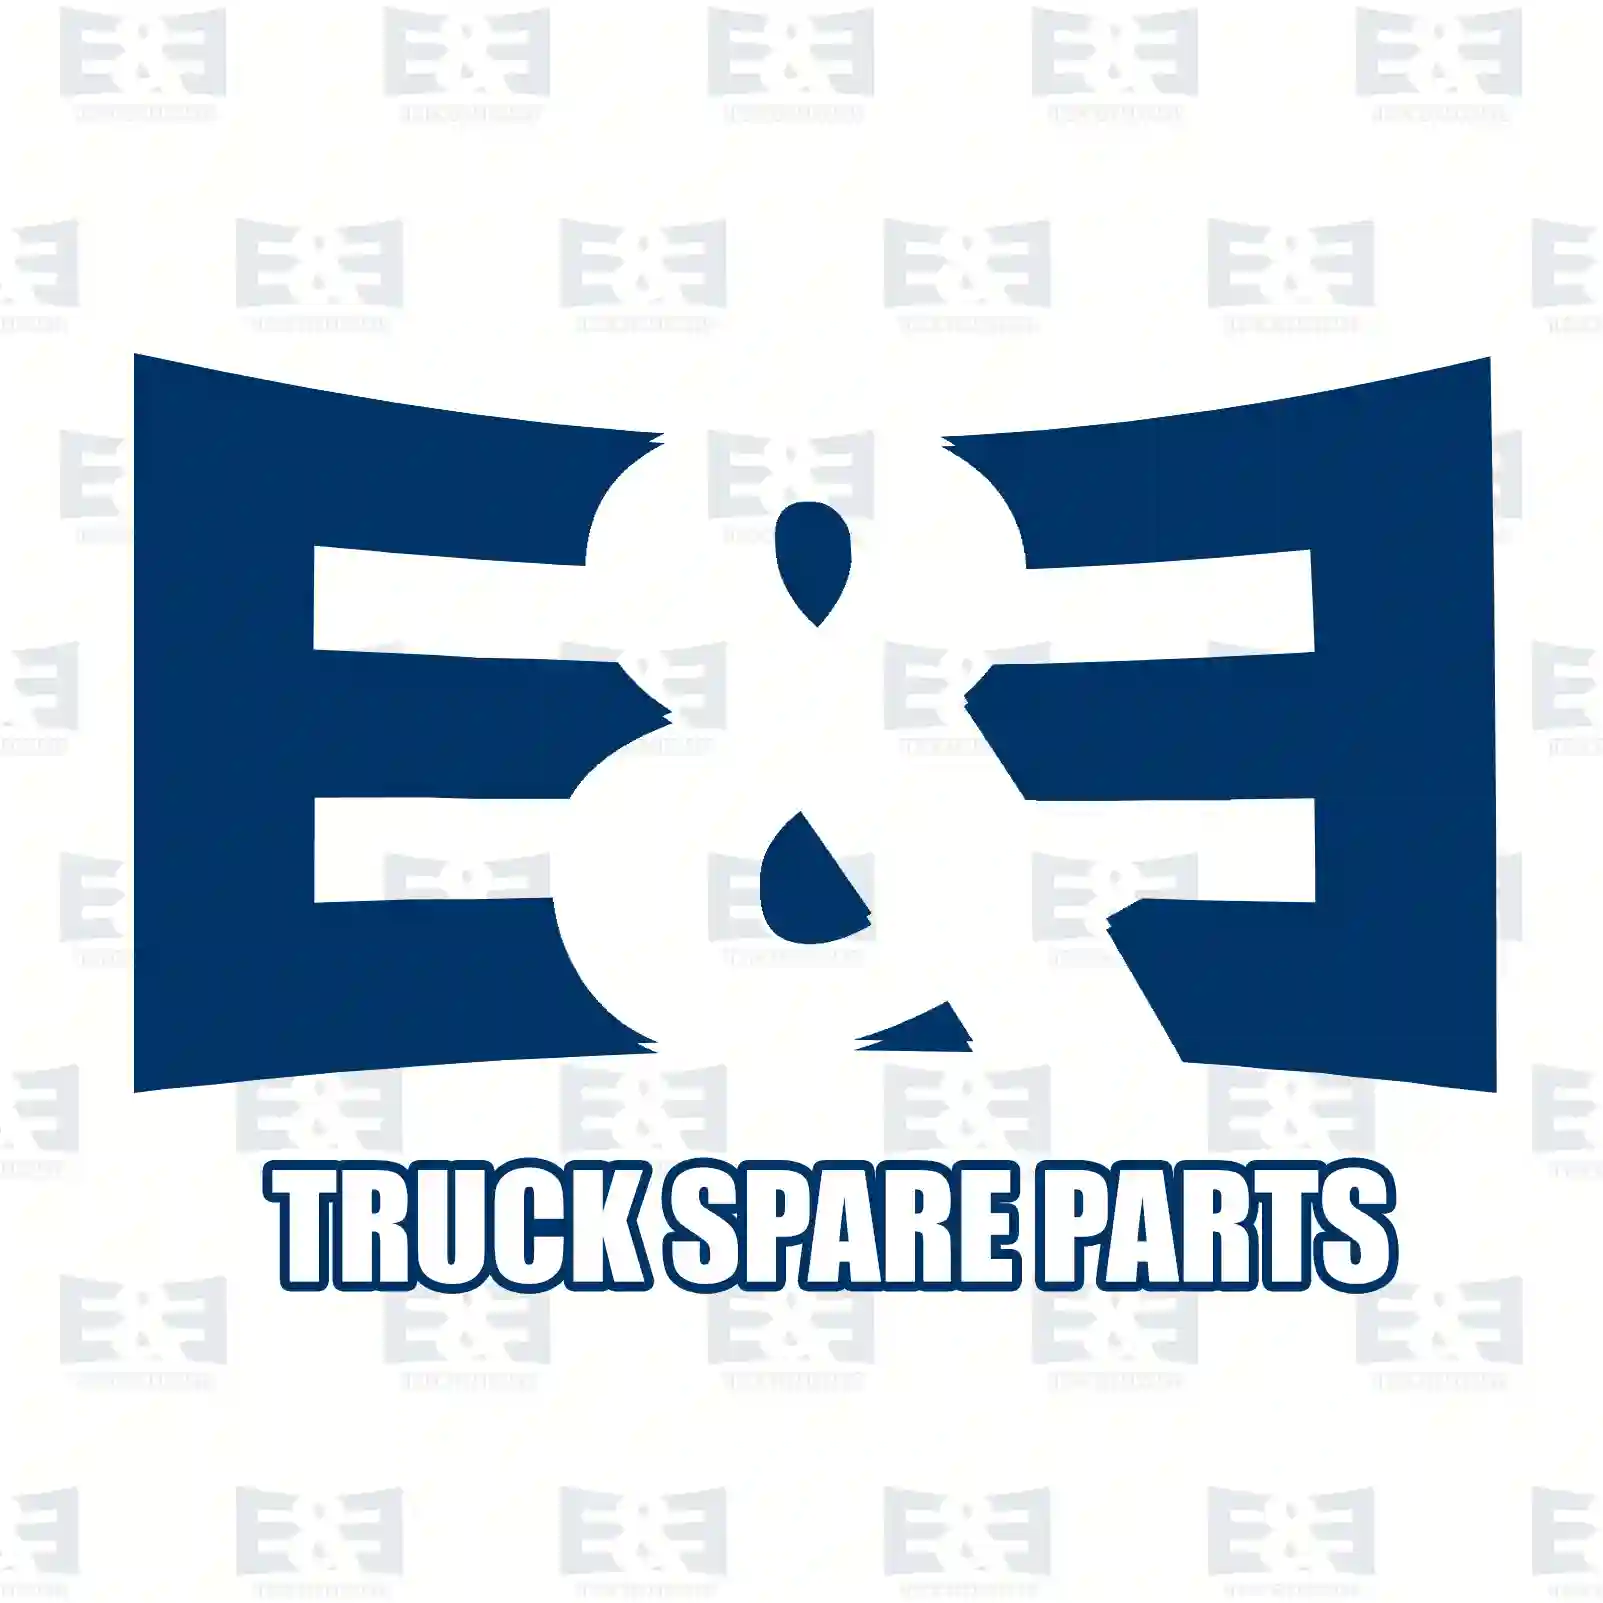 Flange, 2E2270667, 81443010189, 81443010191, 81443010198 ||  2E2270667 E&E Truck Spare Parts | Truck Spare Parts, Auotomotive Spare Parts Flange, 2E2270667, 81443010189, 81443010191, 81443010198 ||  2E2270667 E&E Truck Spare Parts | Truck Spare Parts, Auotomotive Spare Parts